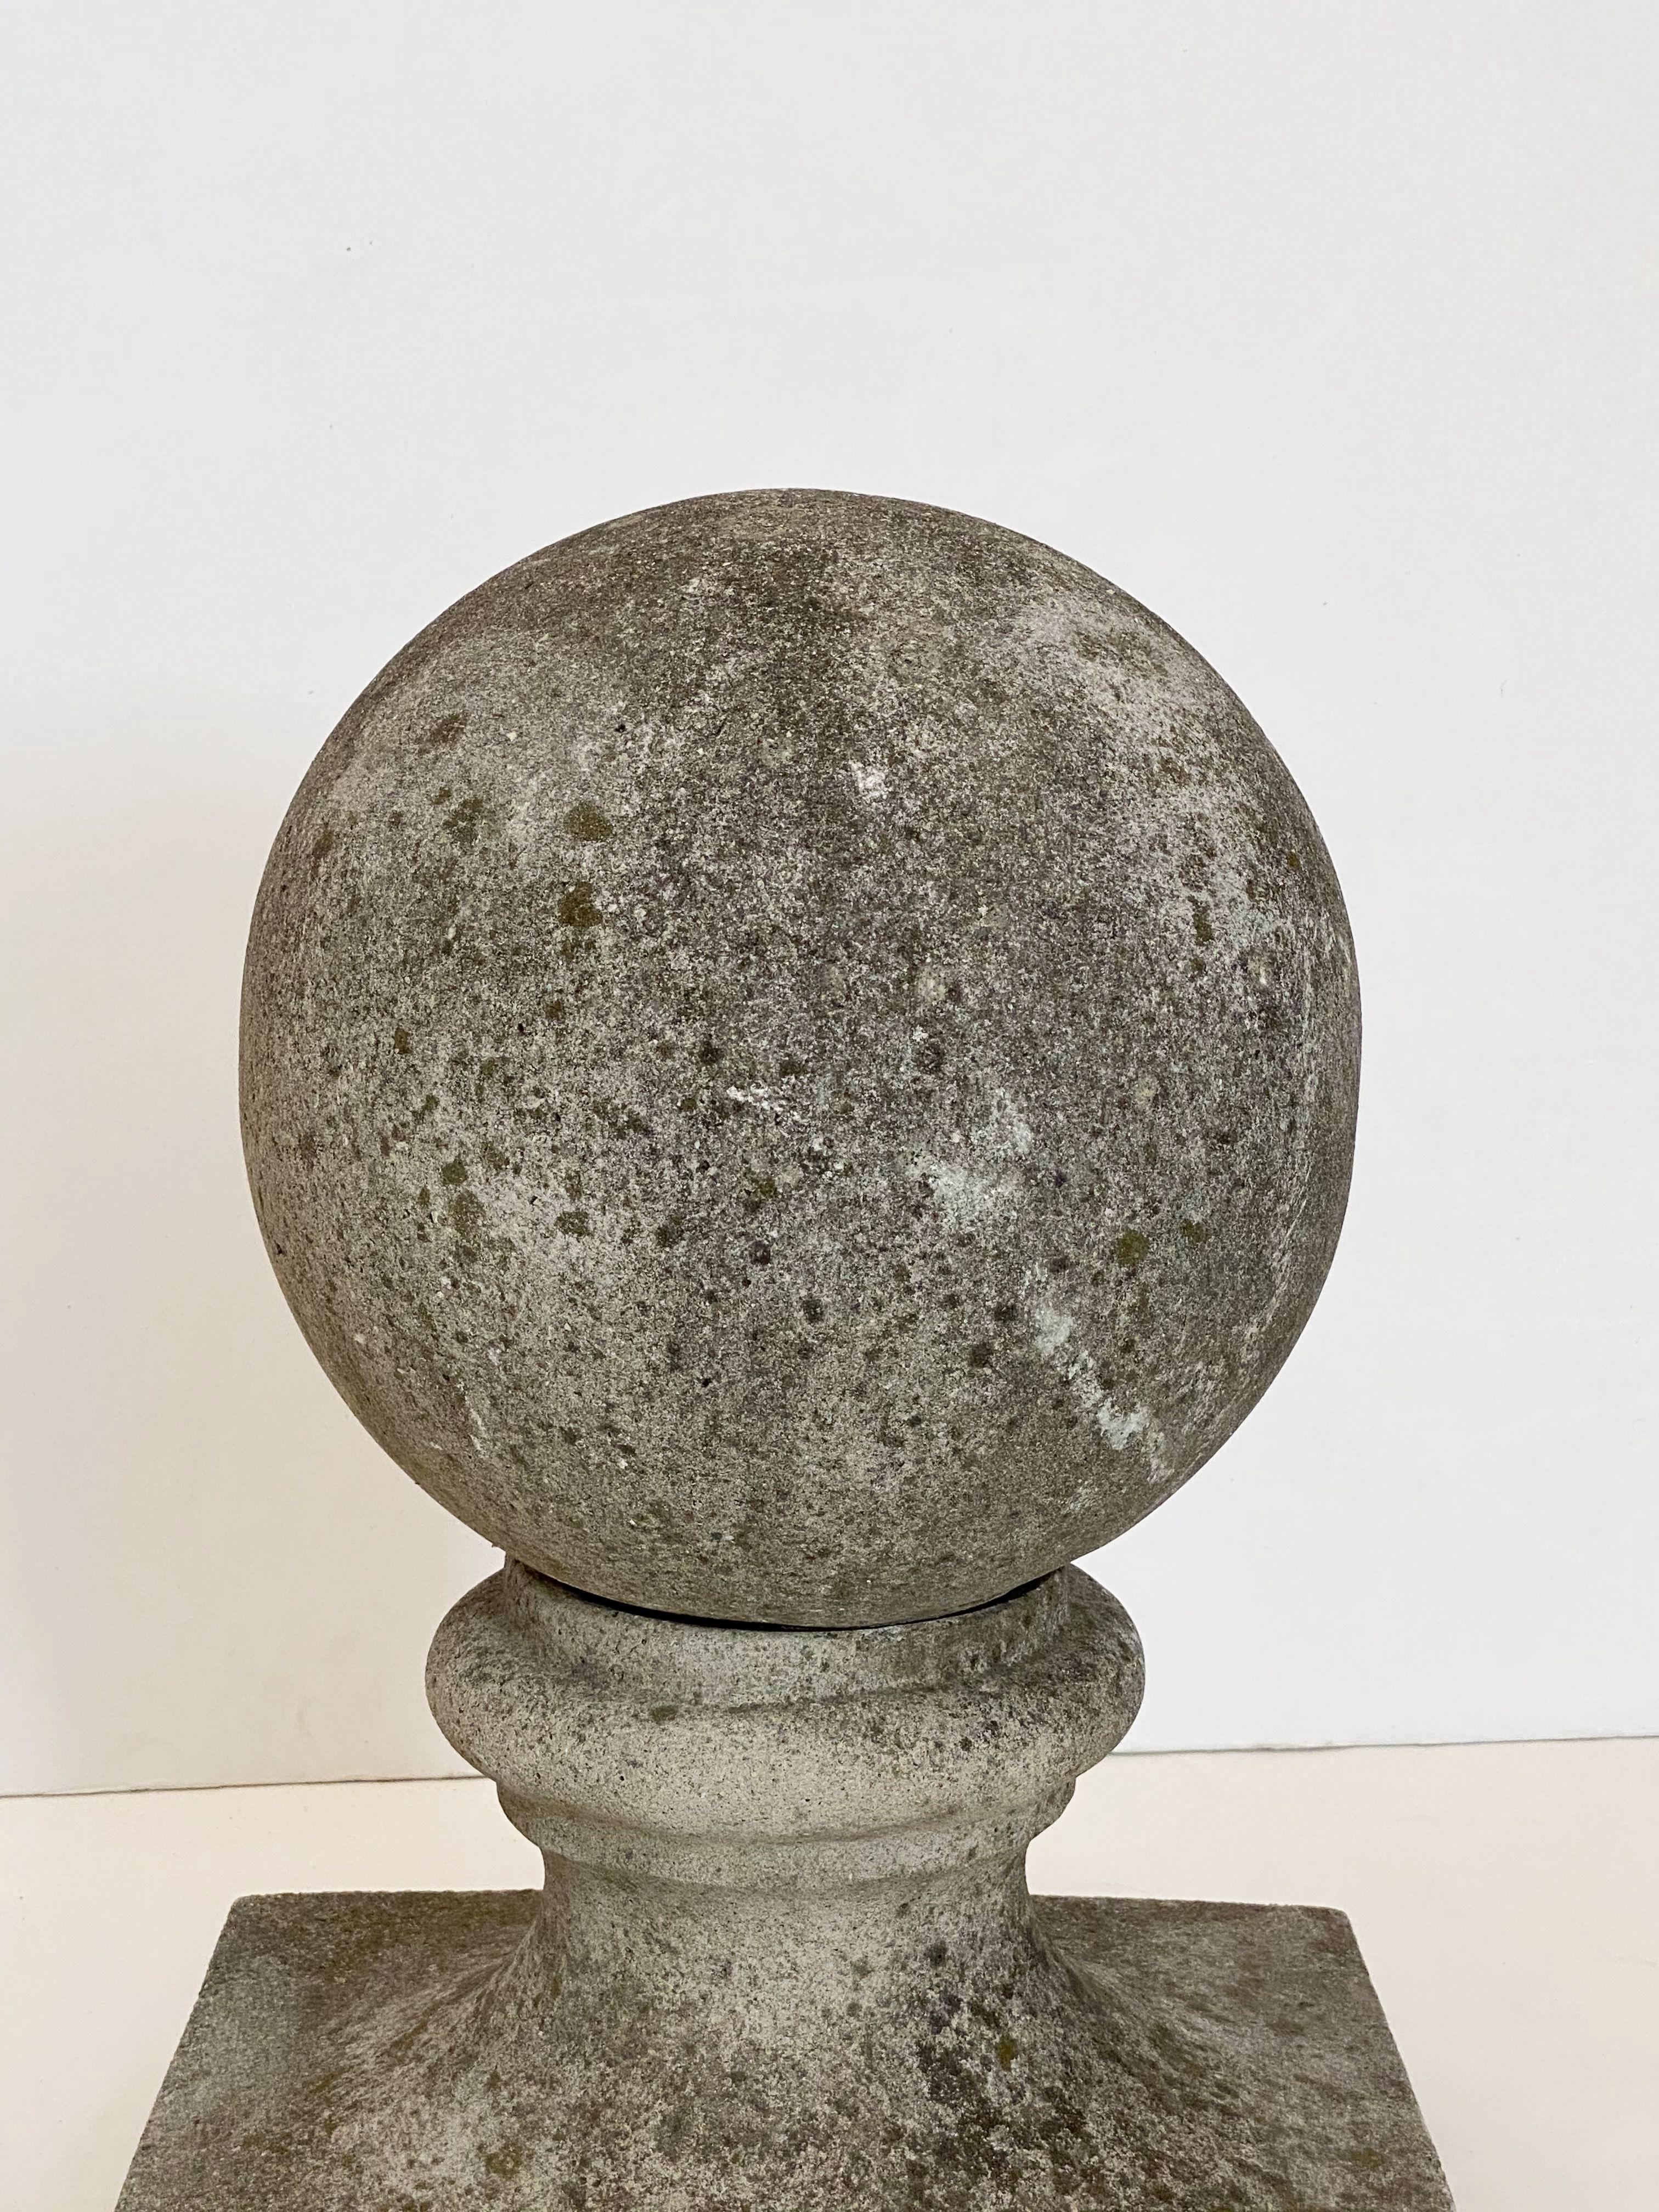 English Garden Stone Coping Balls 'Individually Priced' 1